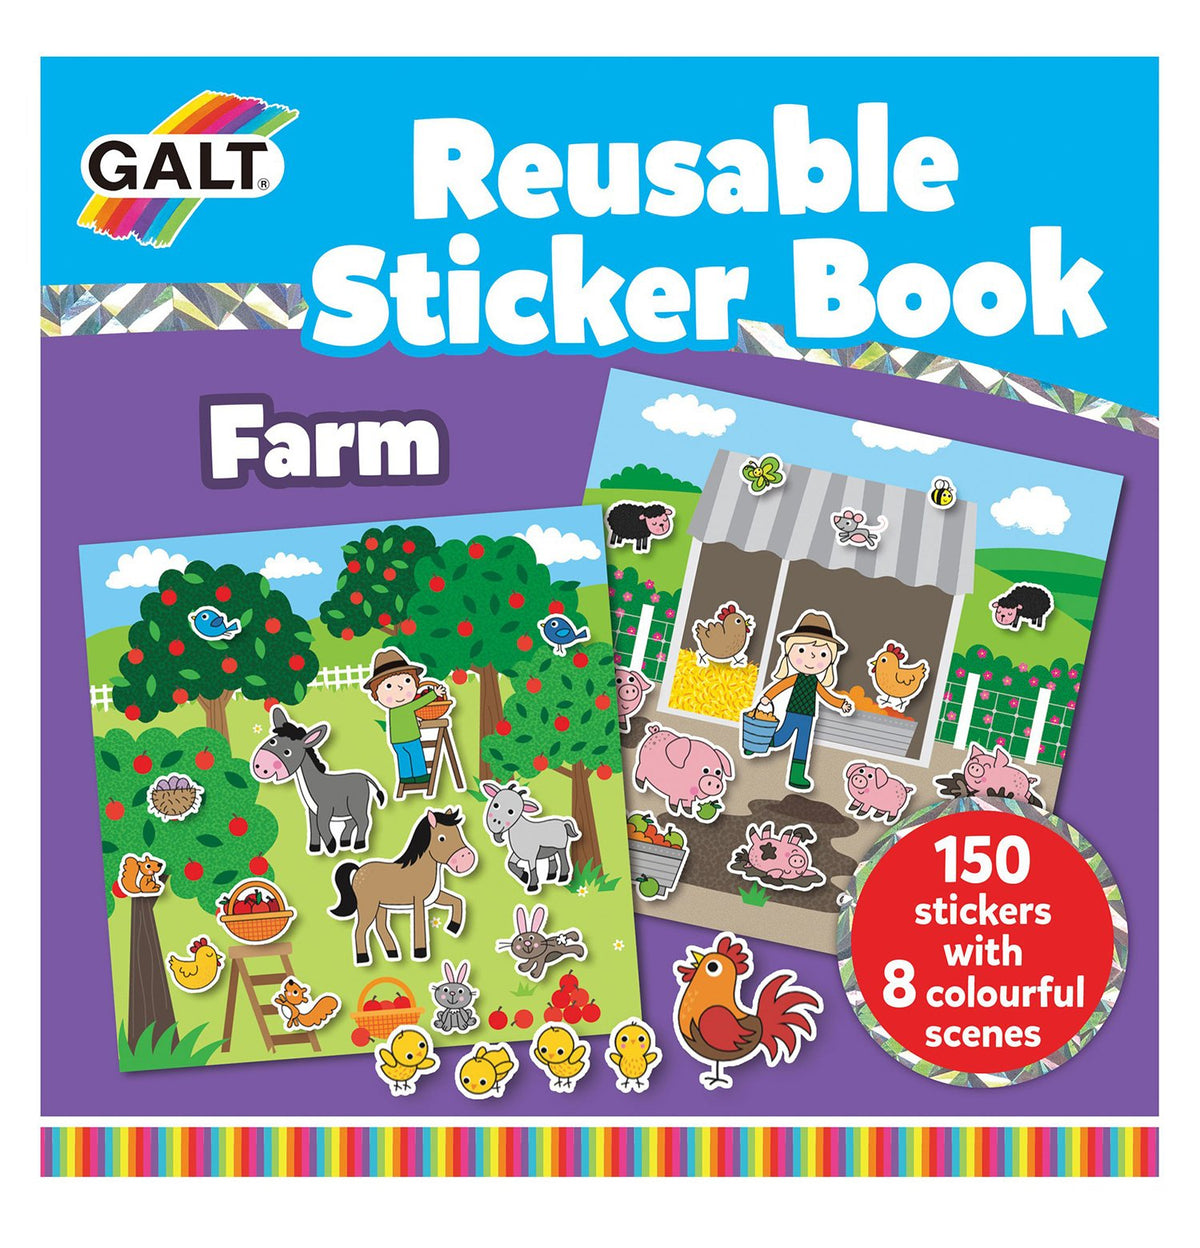 Reusable Sticker Books - Galt